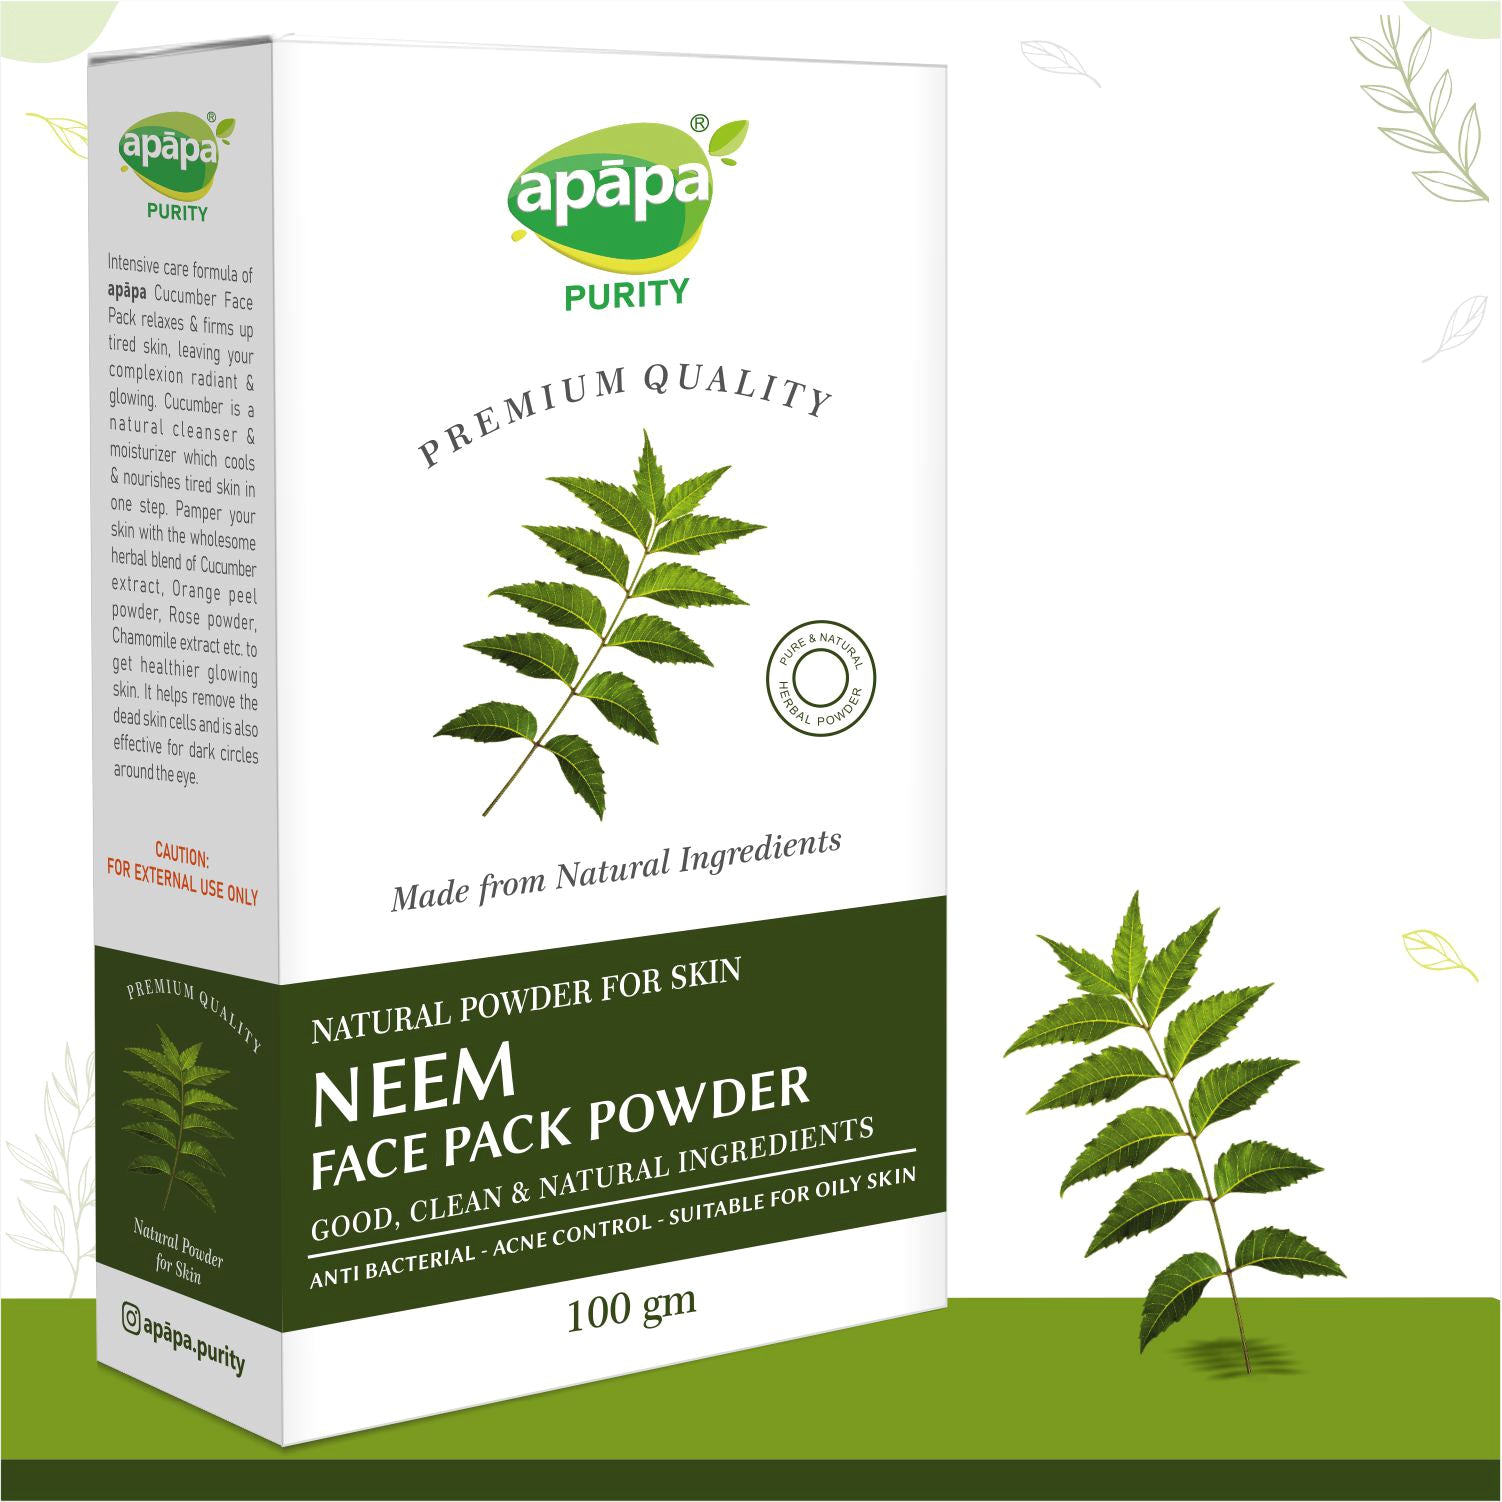 APĀPA Antibacterial Neem Face Pack Powder for Skin